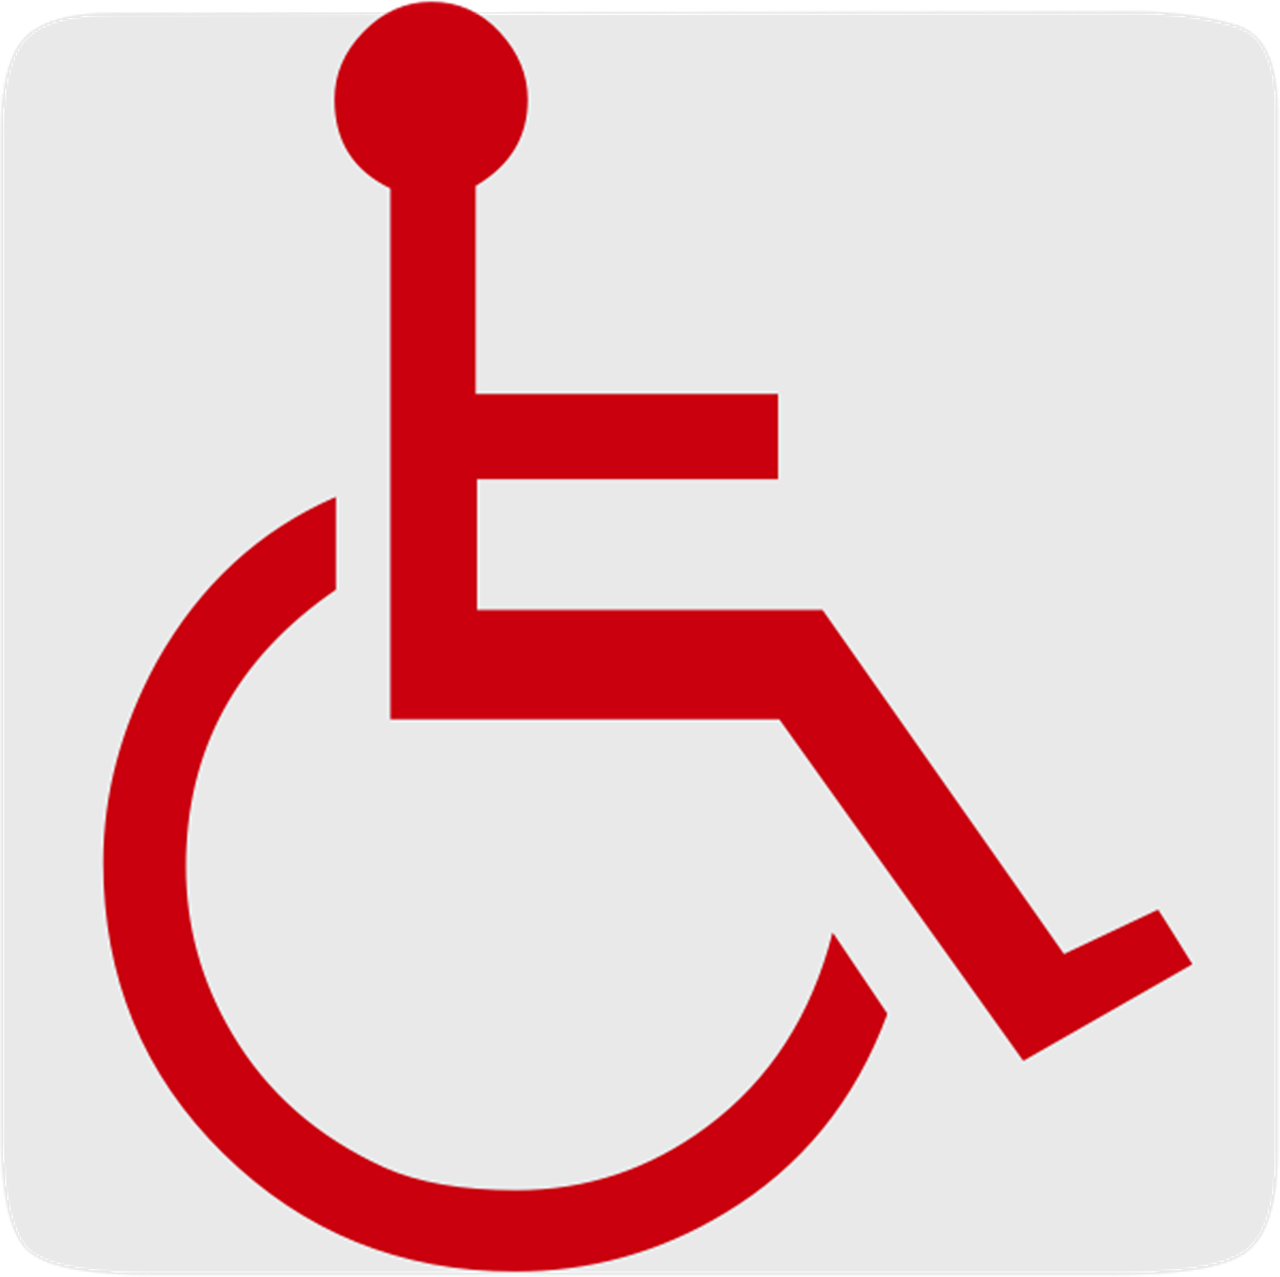 Neįgalus, Automobilių Stovėjimo Aikštelė, Neįgaliųjų Vežimėlis, Žyma, Piktograma, Logotipas, Skaidrus, Pilka, Raudona, Interneto Svetainė